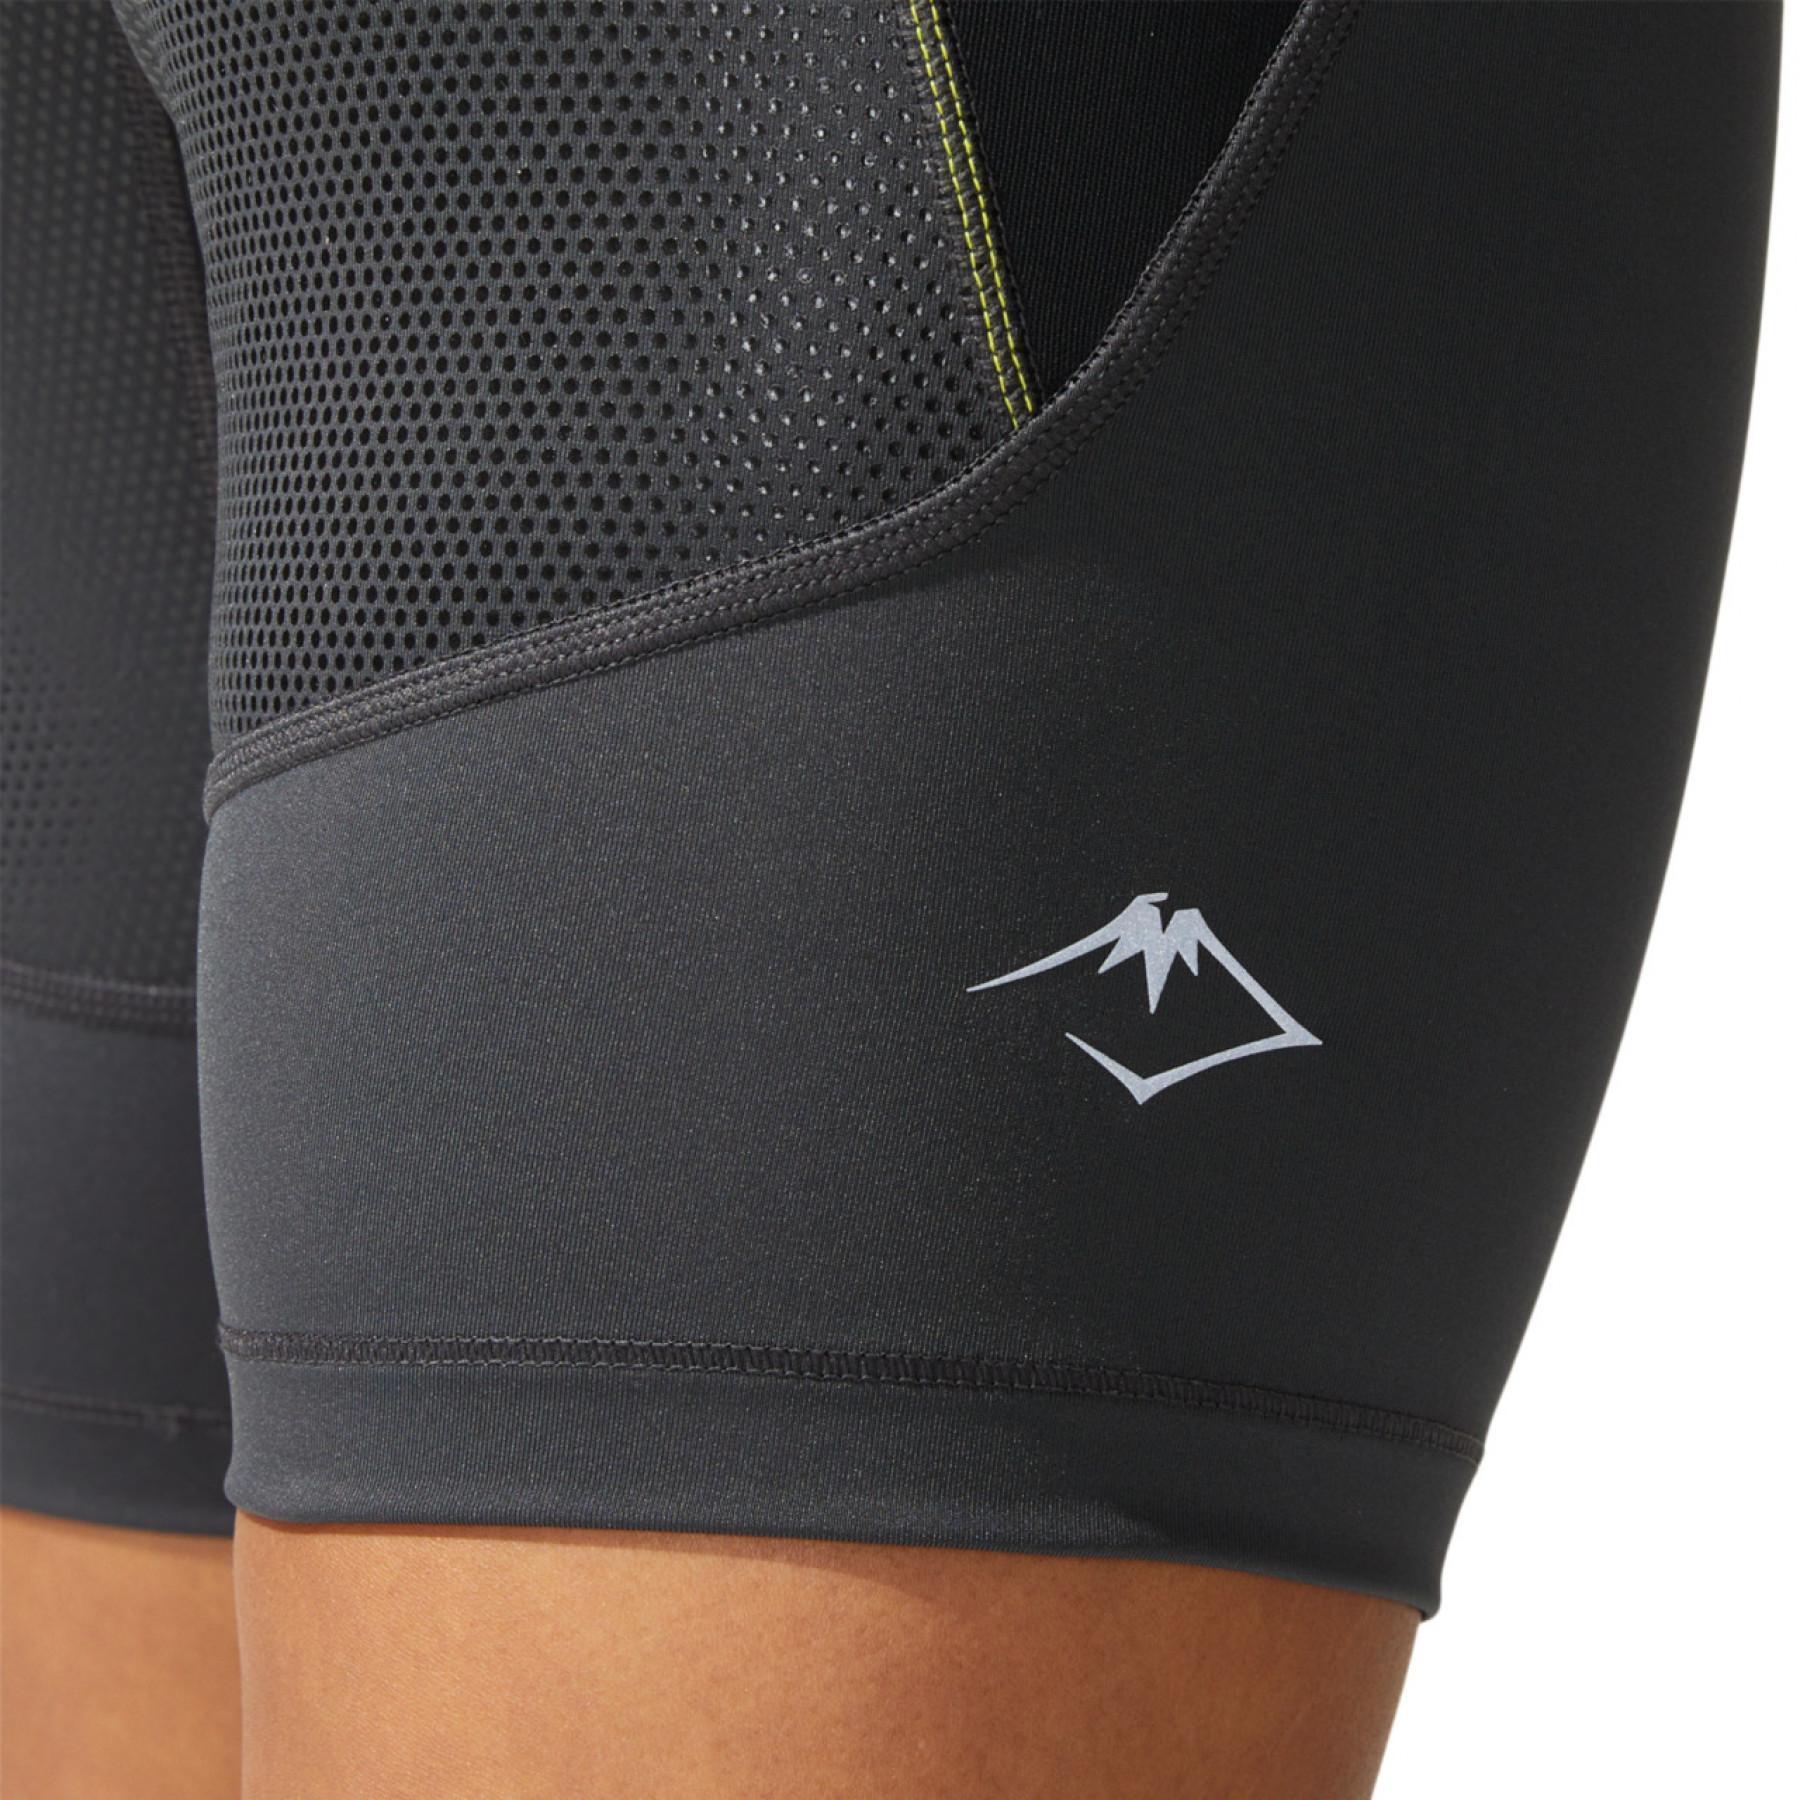 Women's compression shorts Asics Fujitrail Sprinter